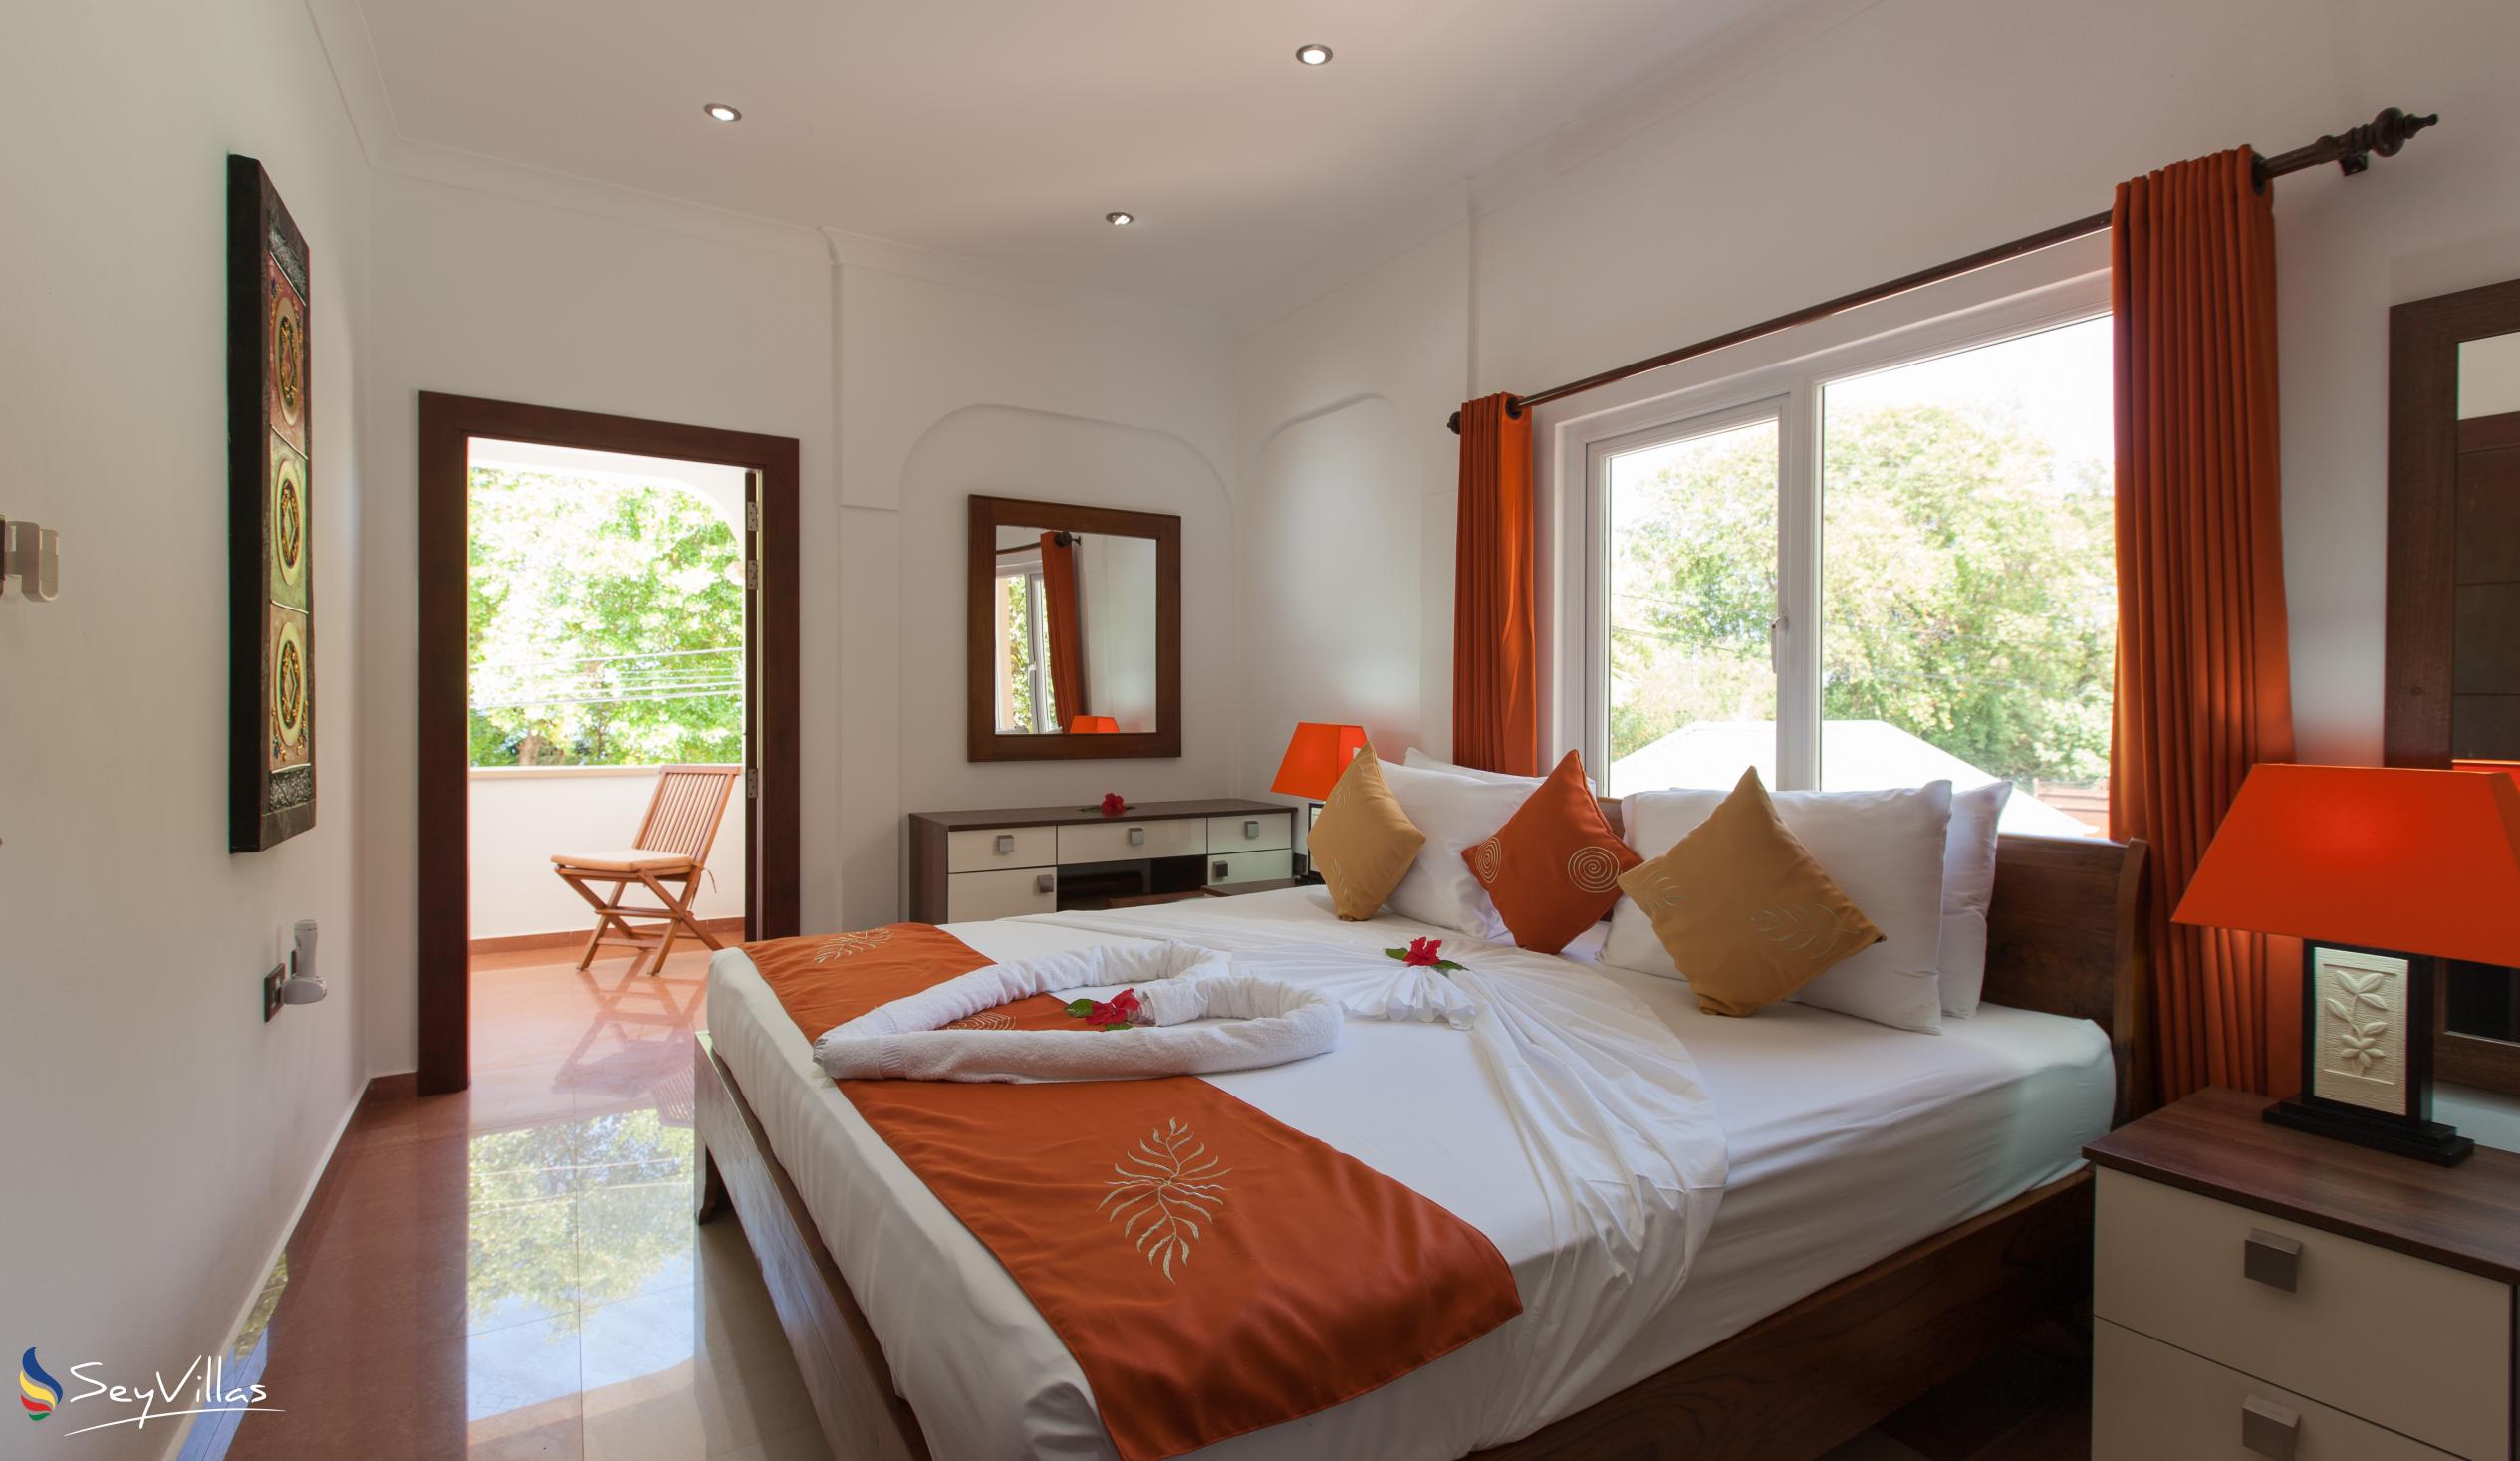 Foto 5: YASAD Luxury Beach Residence - Appartement mit 3 Schlafzimmern - Praslin (Seychellen)